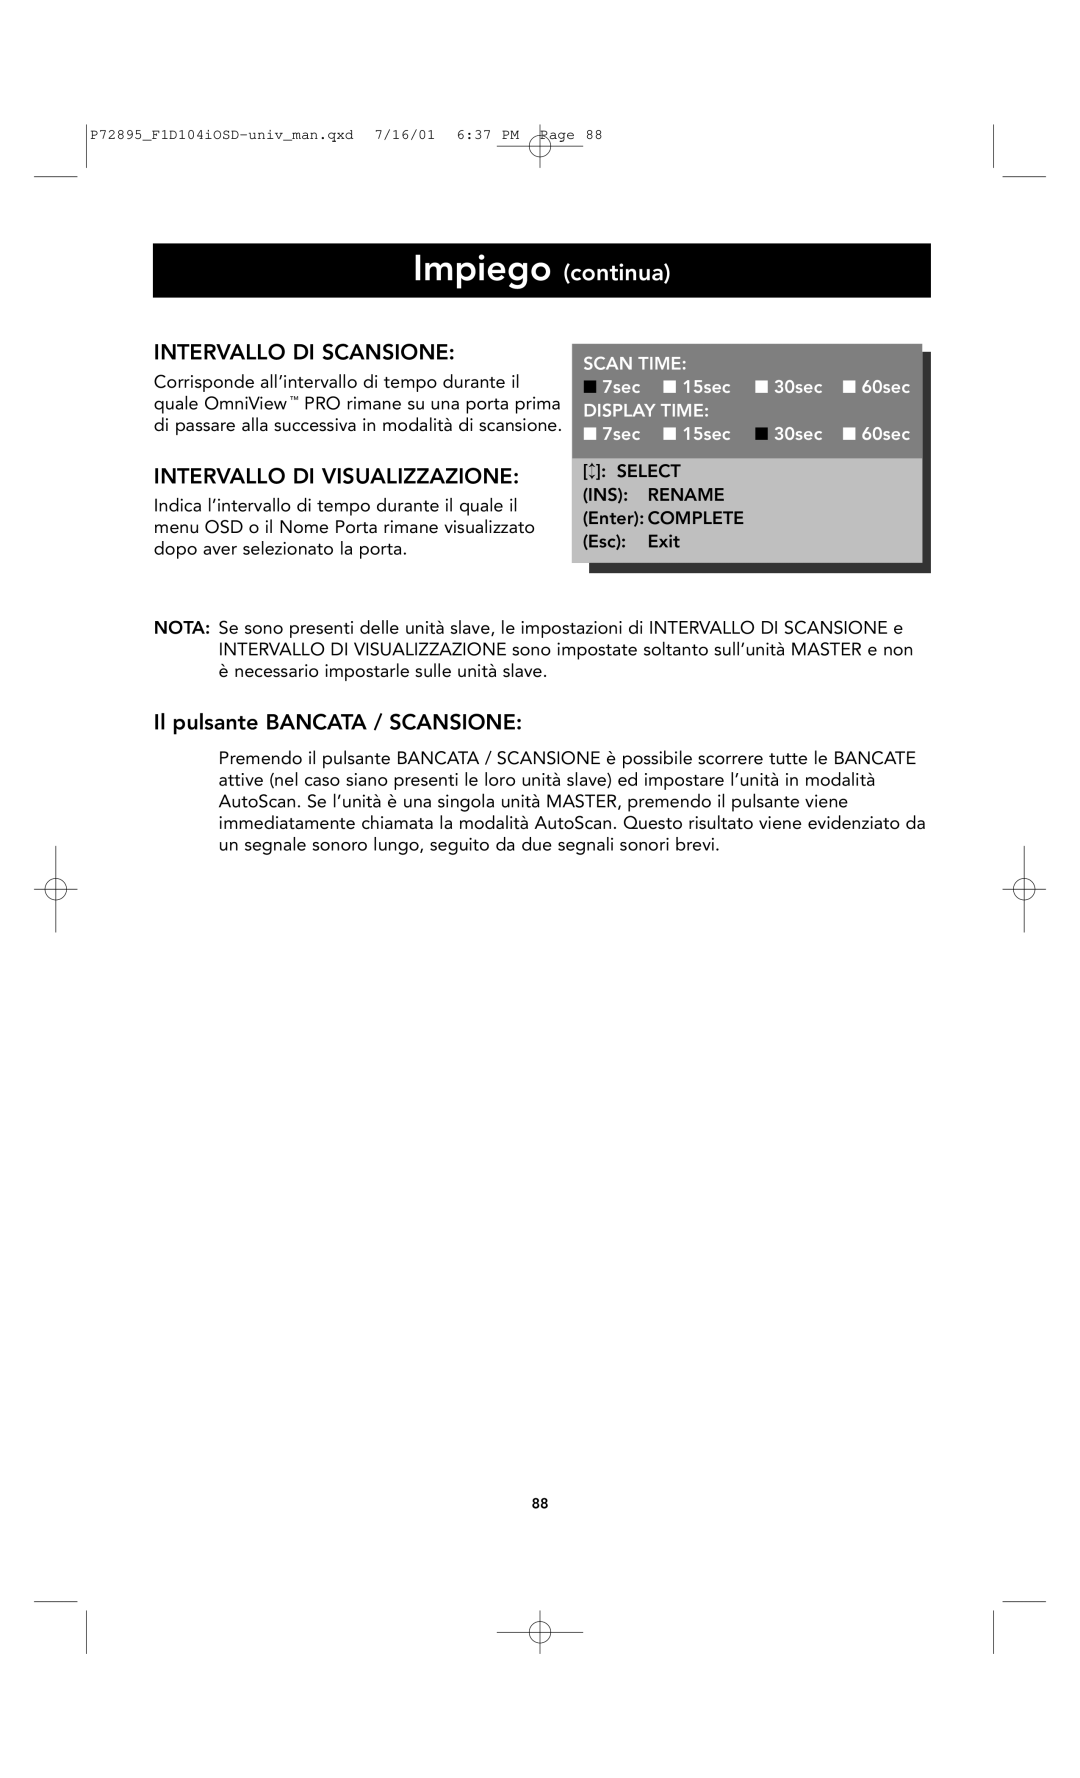 Belkin F1D104-OSD Intervallo Di Scansione, Intervallo Di Visualizzazione, Il pulsante BANCATA / SCANSIONE, Scan Time, 7sec 